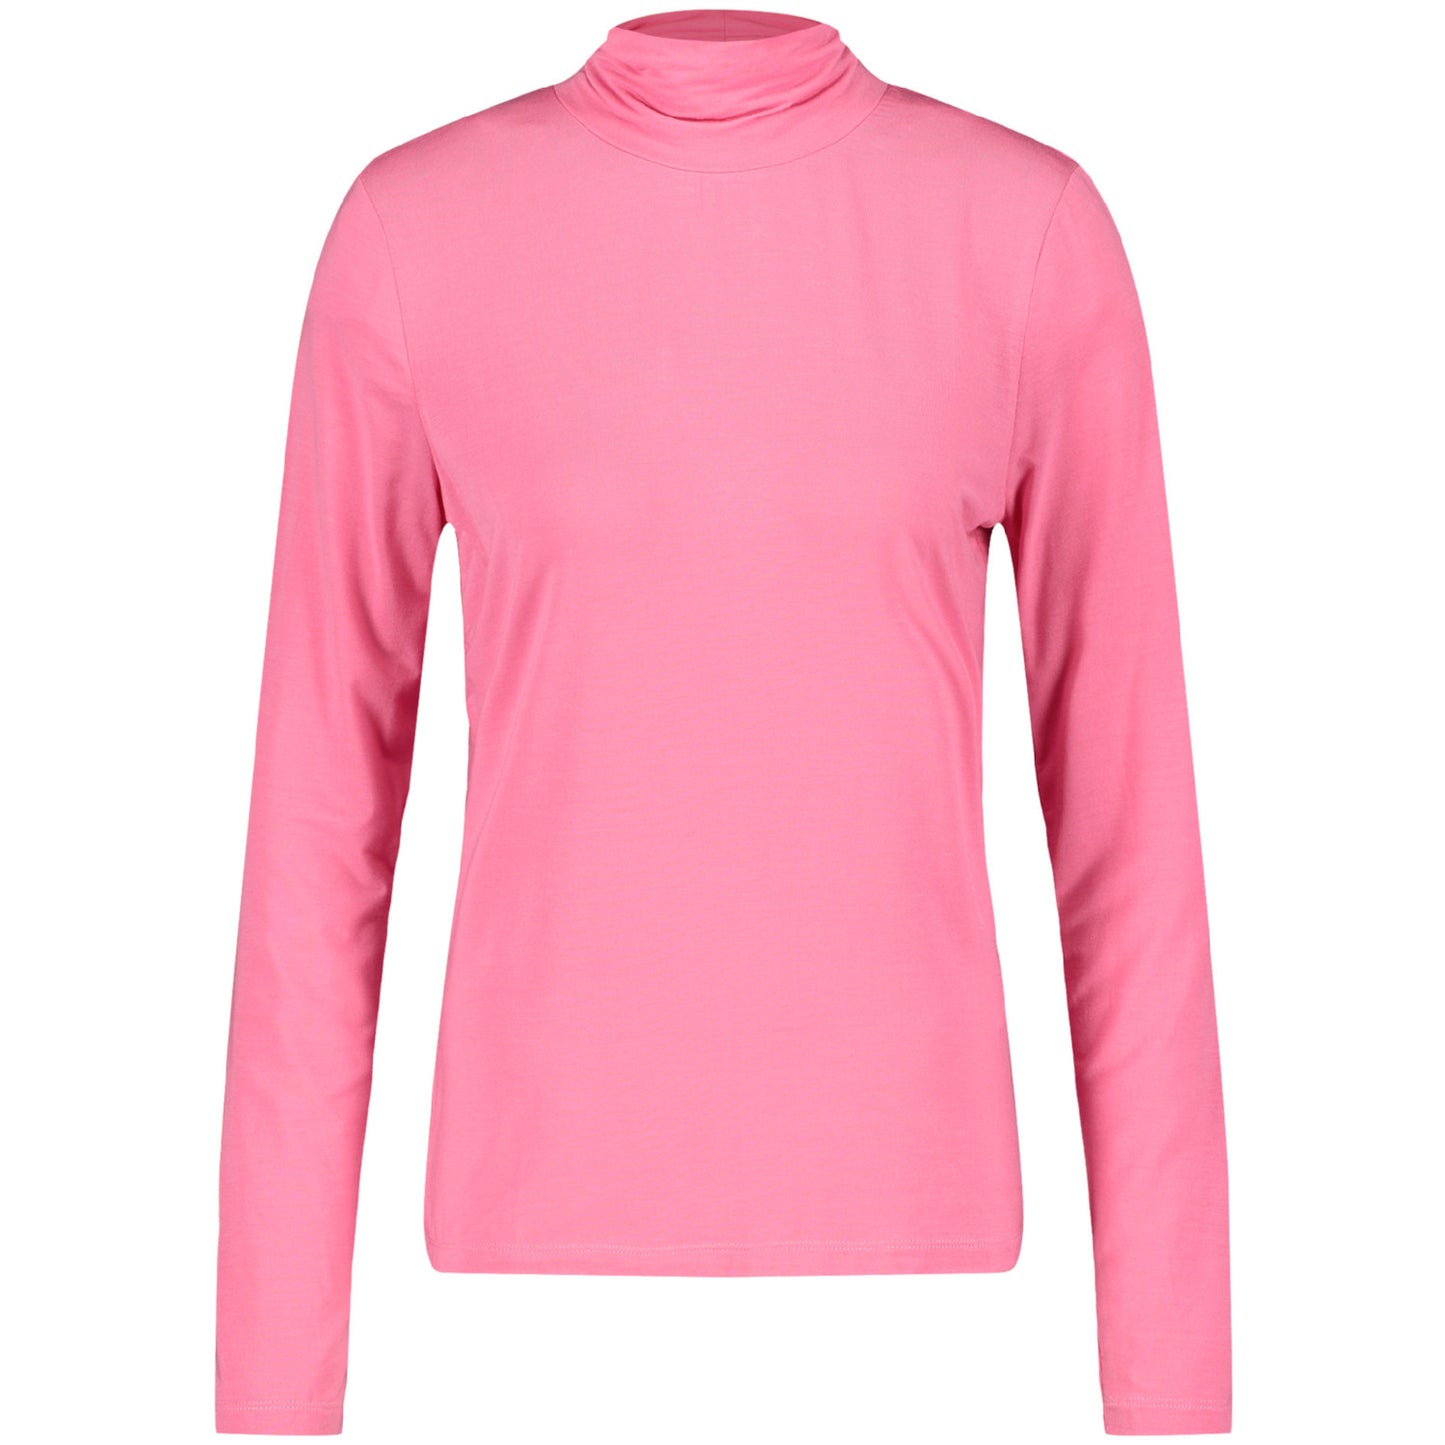 Gerry Weber 870262 35021 30894 Rose Pink T-Shirt